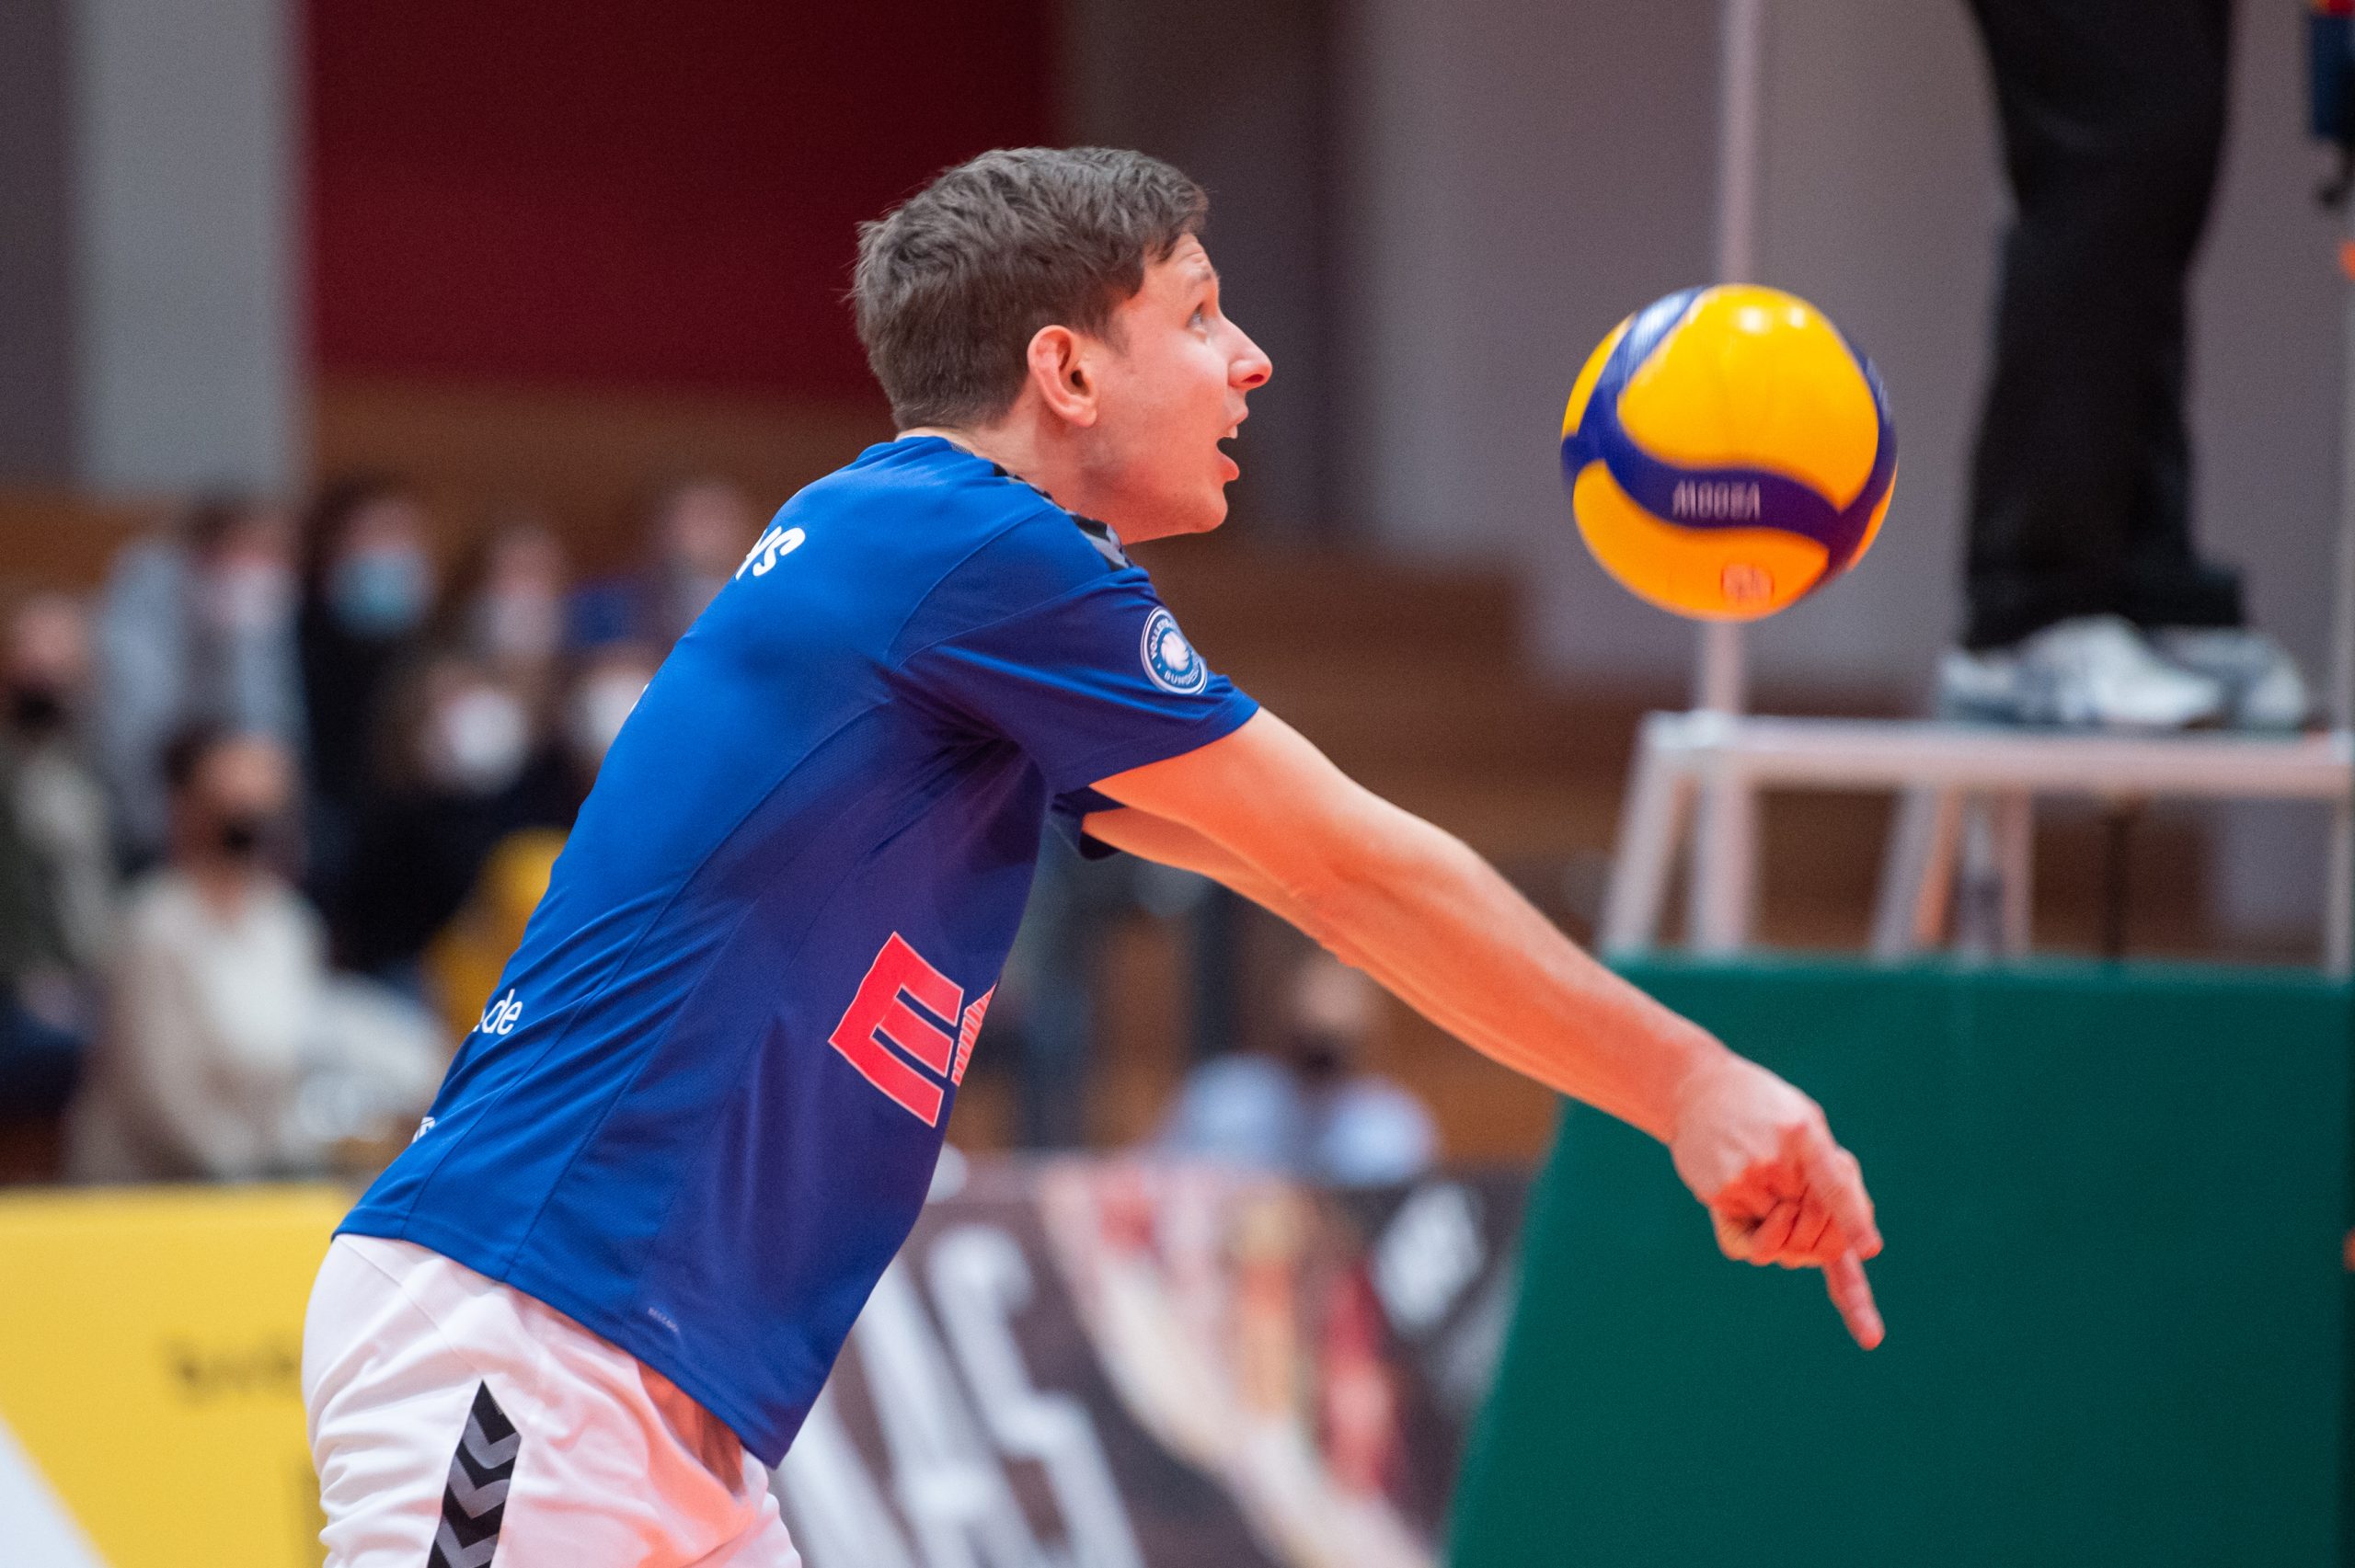 Julius Karoos (Volleys #2)  - L.E. Volleys Leipzig vs Blue Volleys Gotha, Volleyball, 2.Liga, 29.01.2022